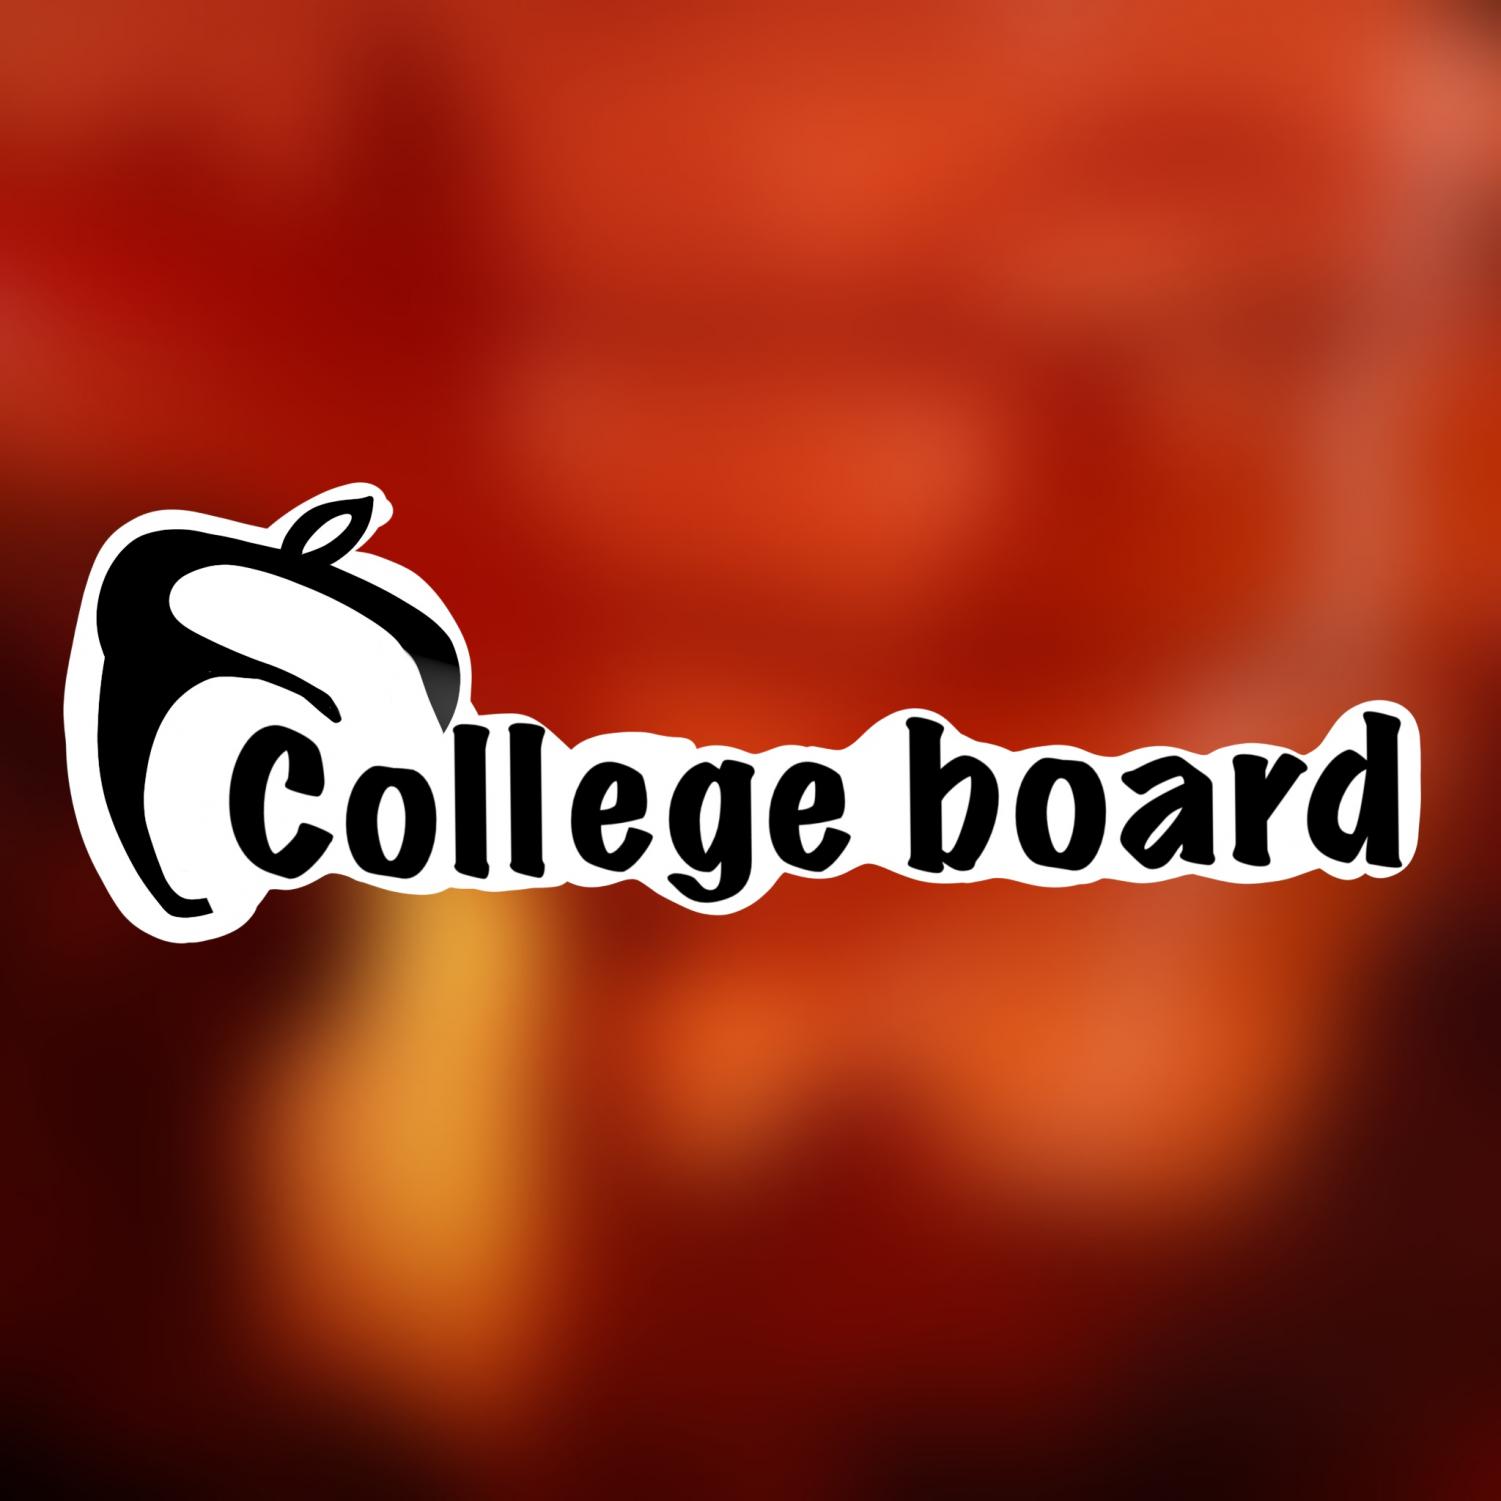 Opinion: The College Board is a corrupt, monopolistic money scheme